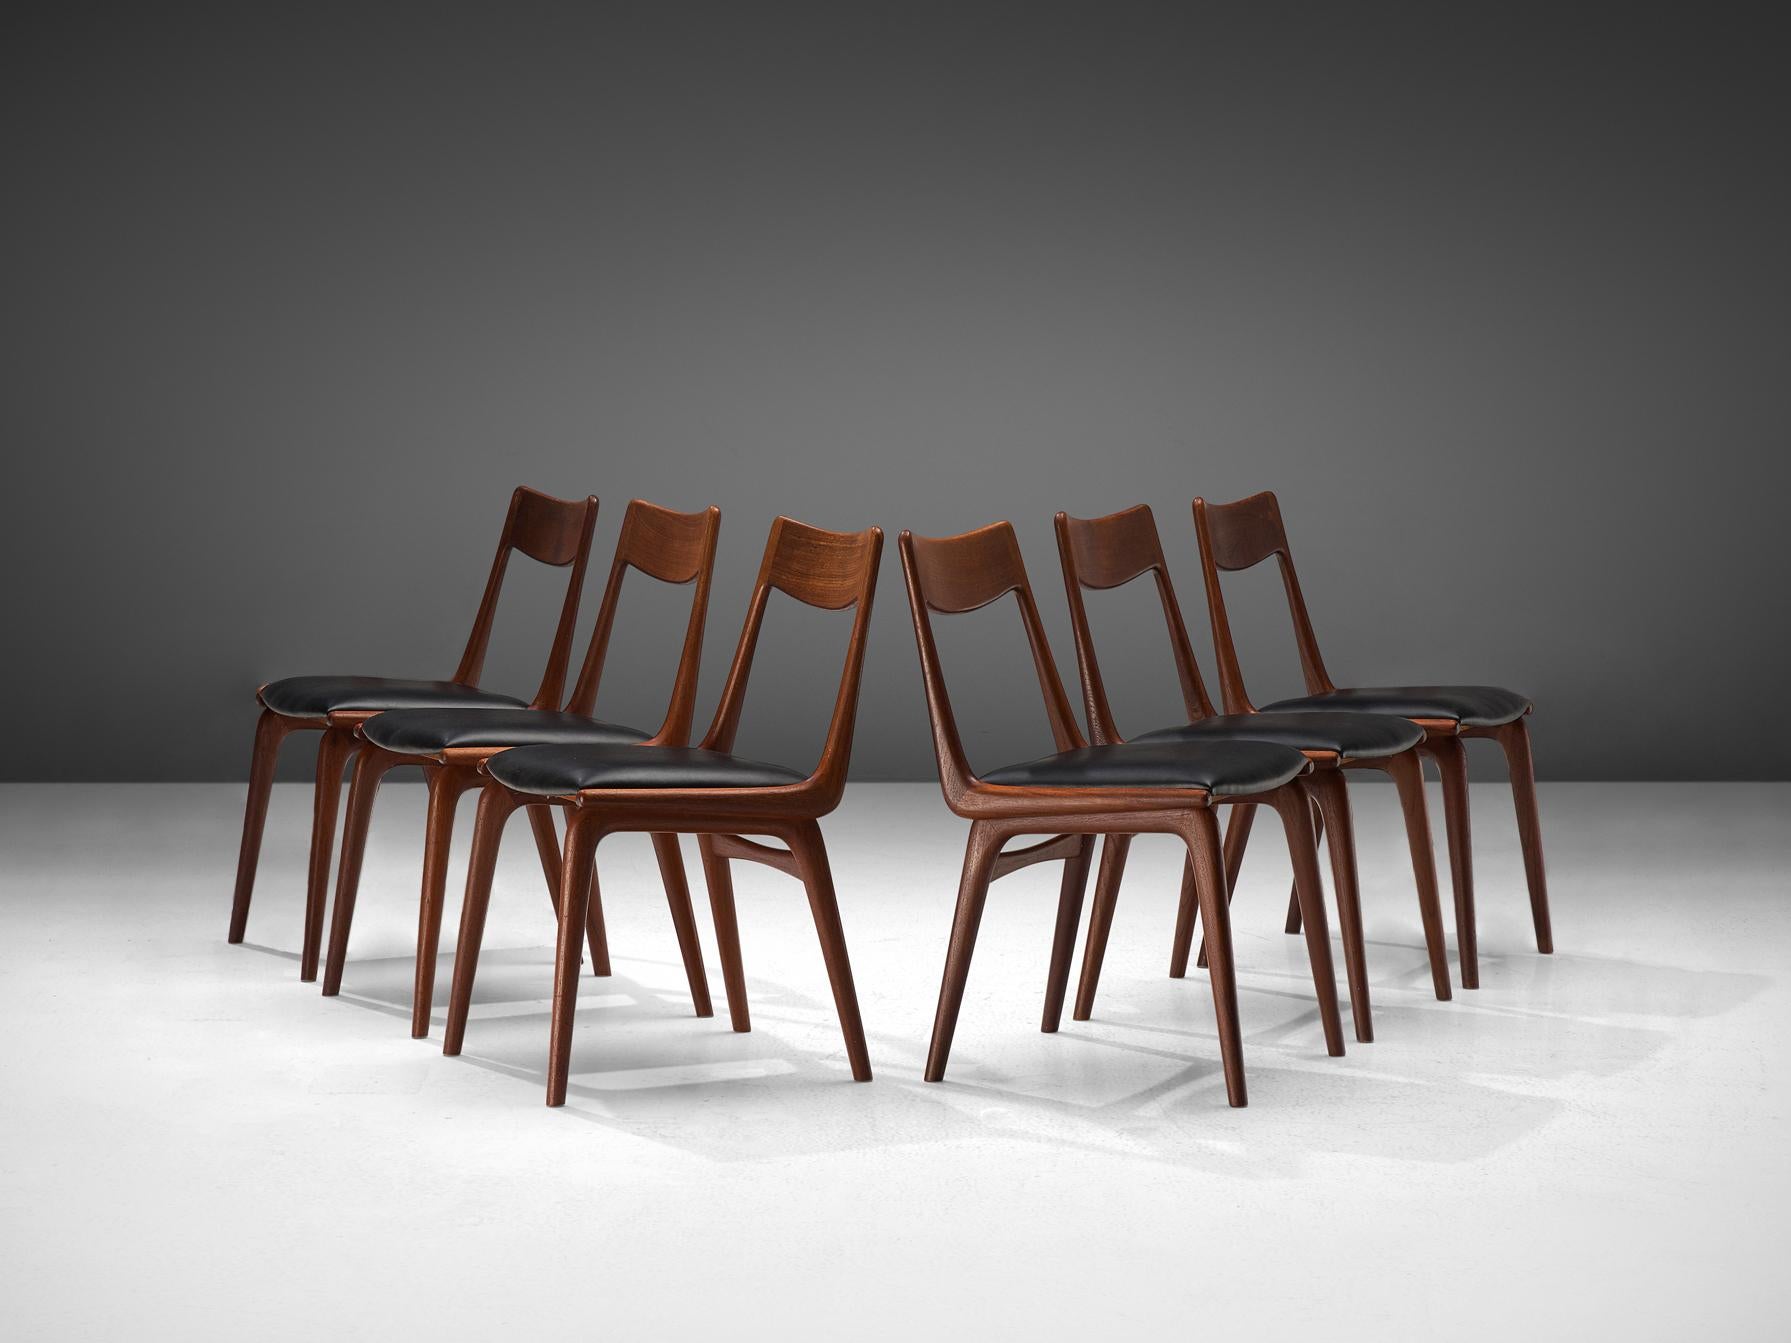 Alfred Christensen pour Slagelse Møbelvaerk, ensemble de six chaises de salle à manger modèle 370, teck, similicuir, Danemark, années 1960.

Elegant ensemble de chaises de salle à manger danoises, avec une structure en teck. Vue de côté, l'armature